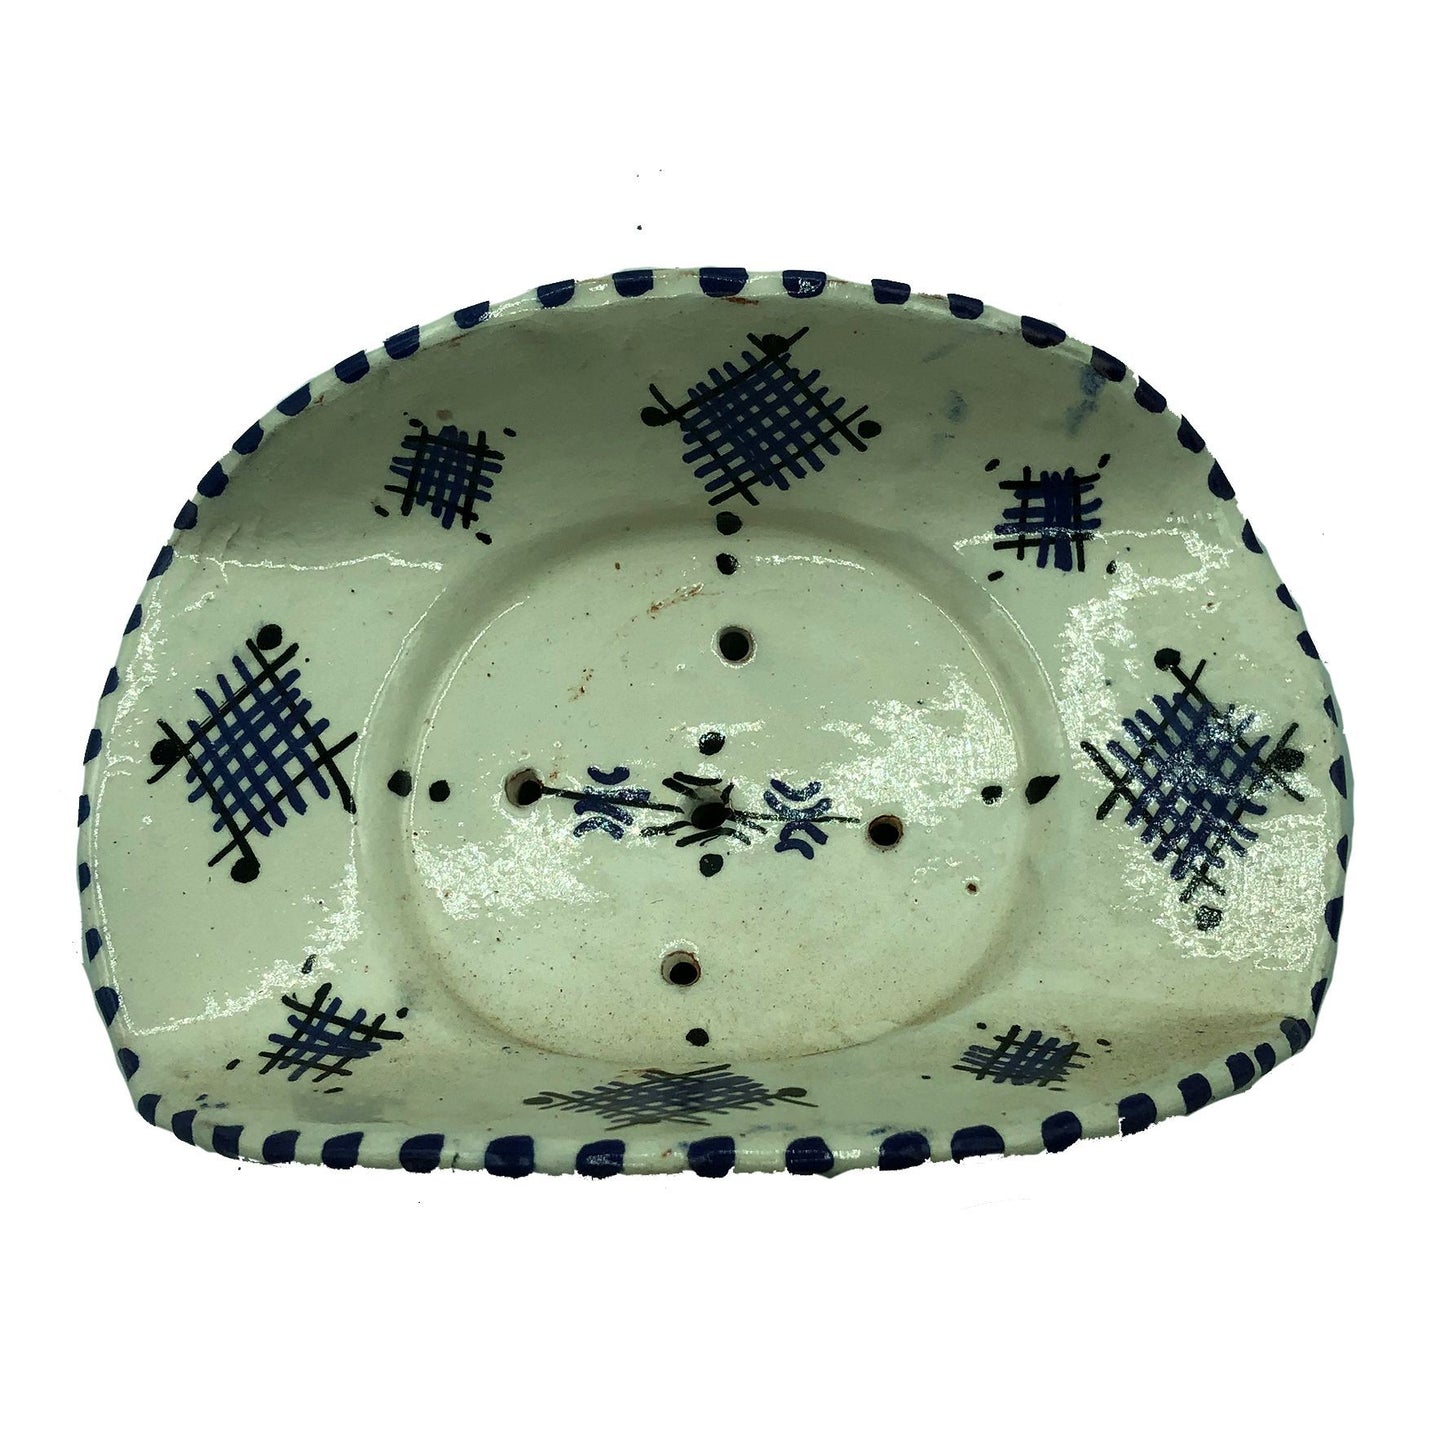 Arredamento Etnico Porta Sapone Ceramica Terracotta Artigiano Marocco 1904211010